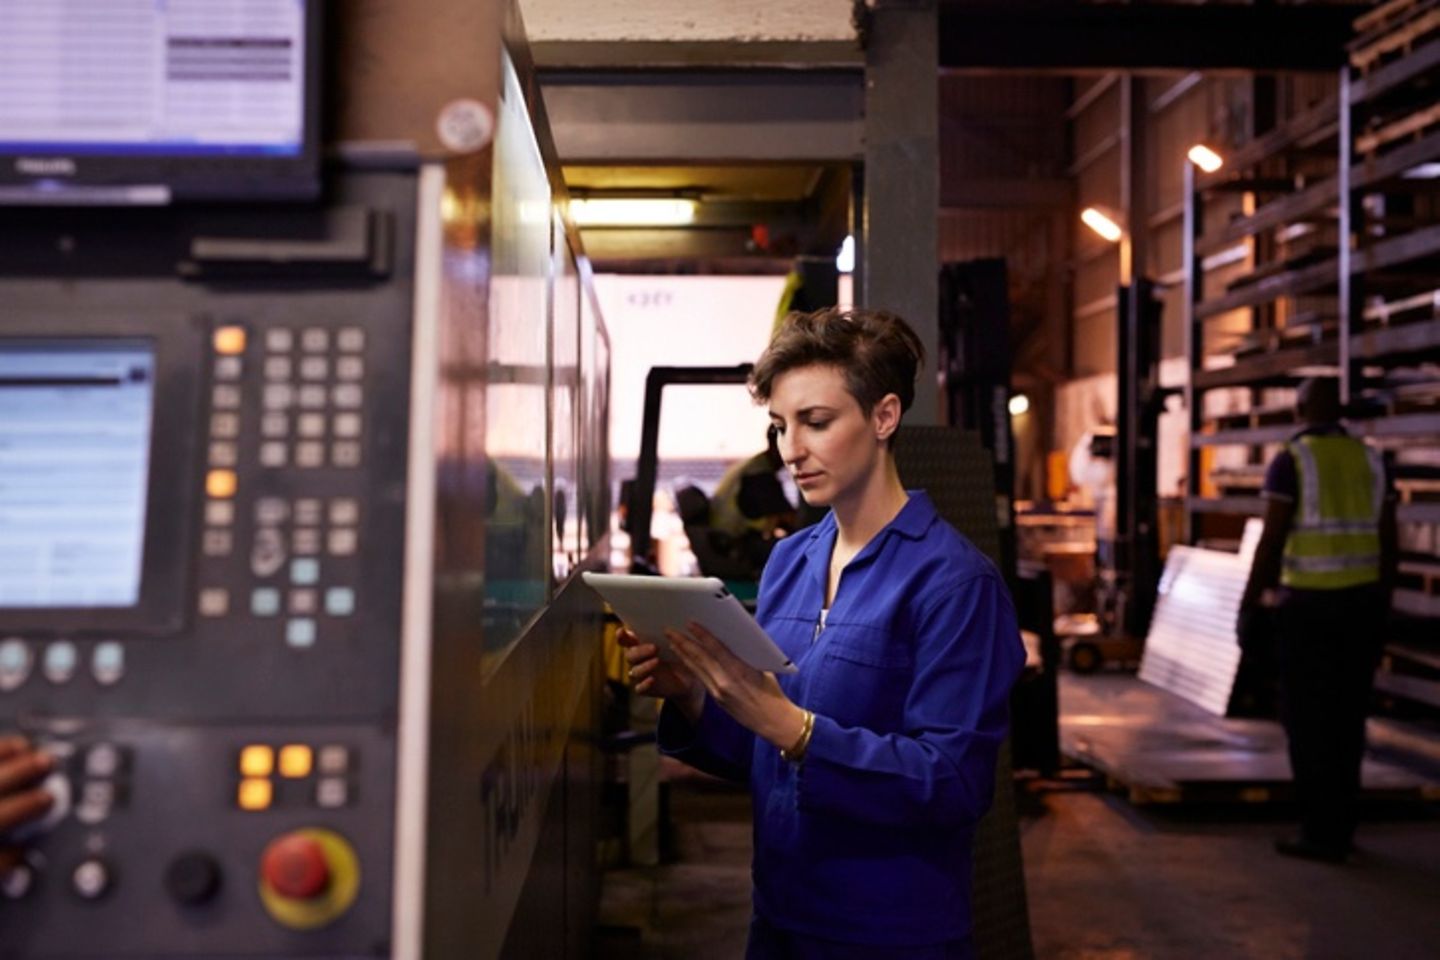 Trabajadora del acero con uniforme azul sosteniendo un tablet